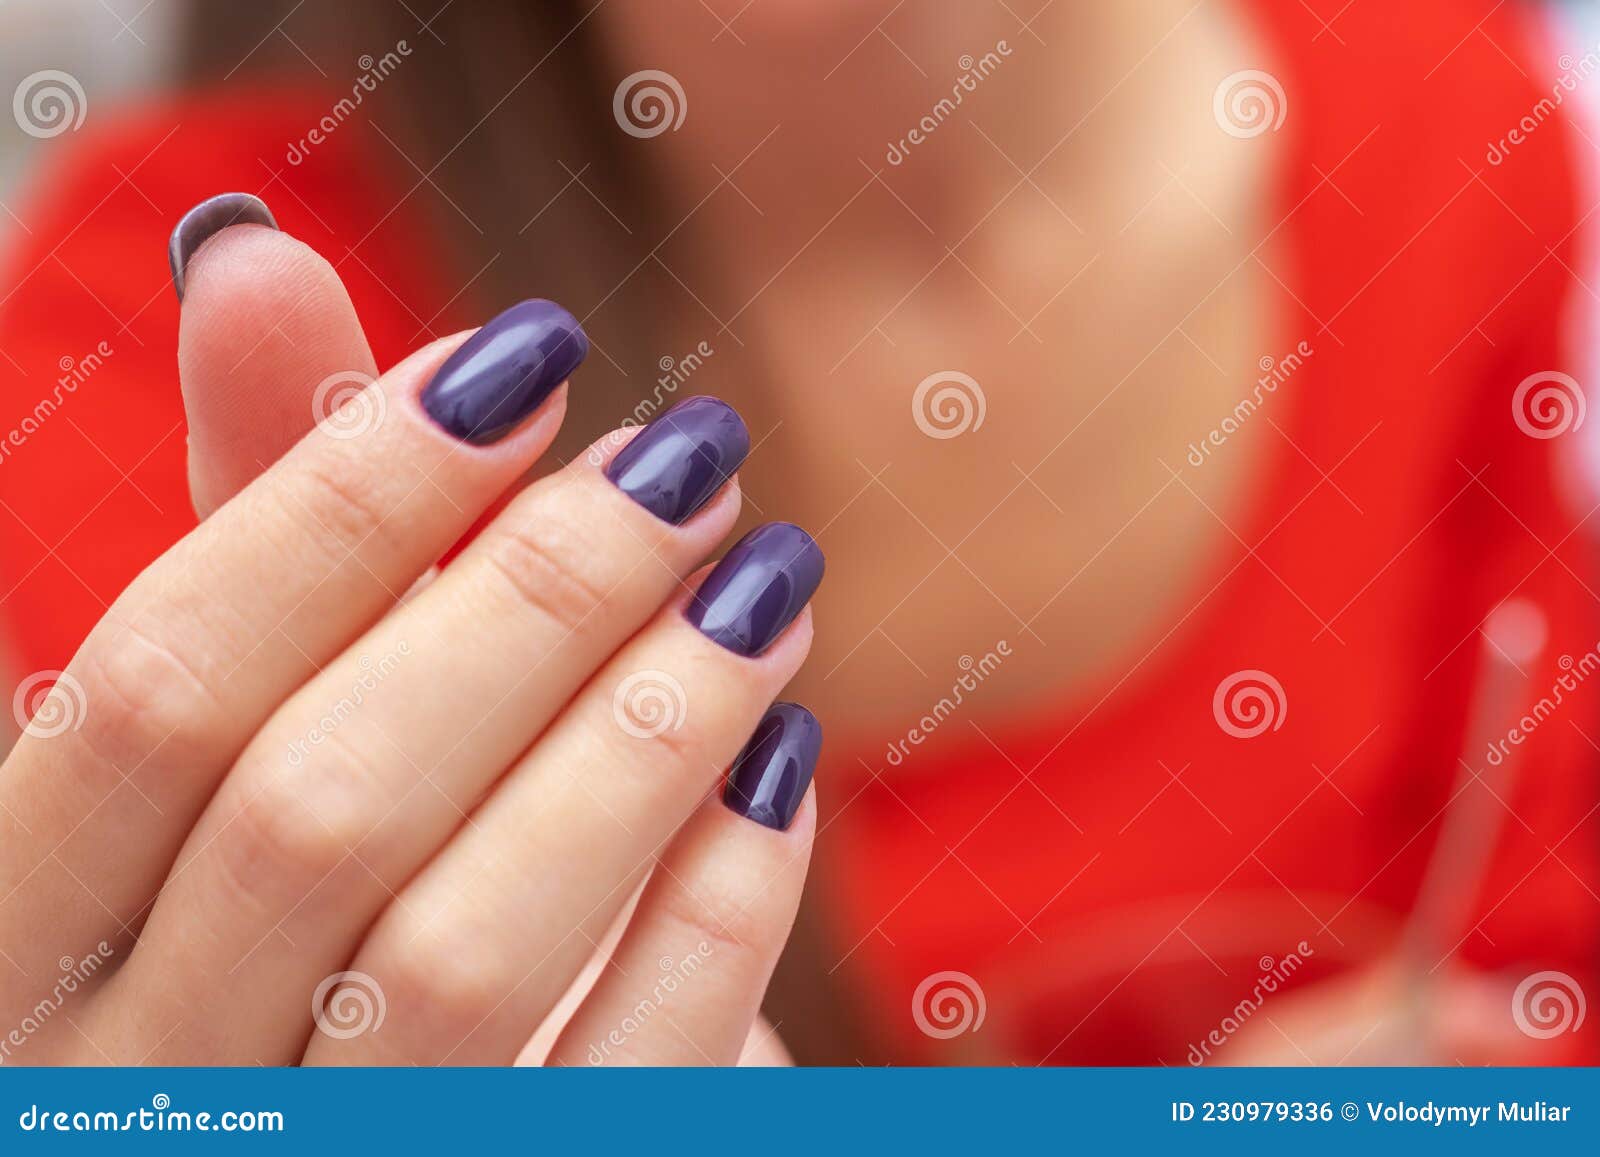 Las Chicas Con Las Uñas Moradas Oscuras En El Fondo De Un Vestido Rojo Foto  de archivo - Imagen de hembra, modelo: 230979336